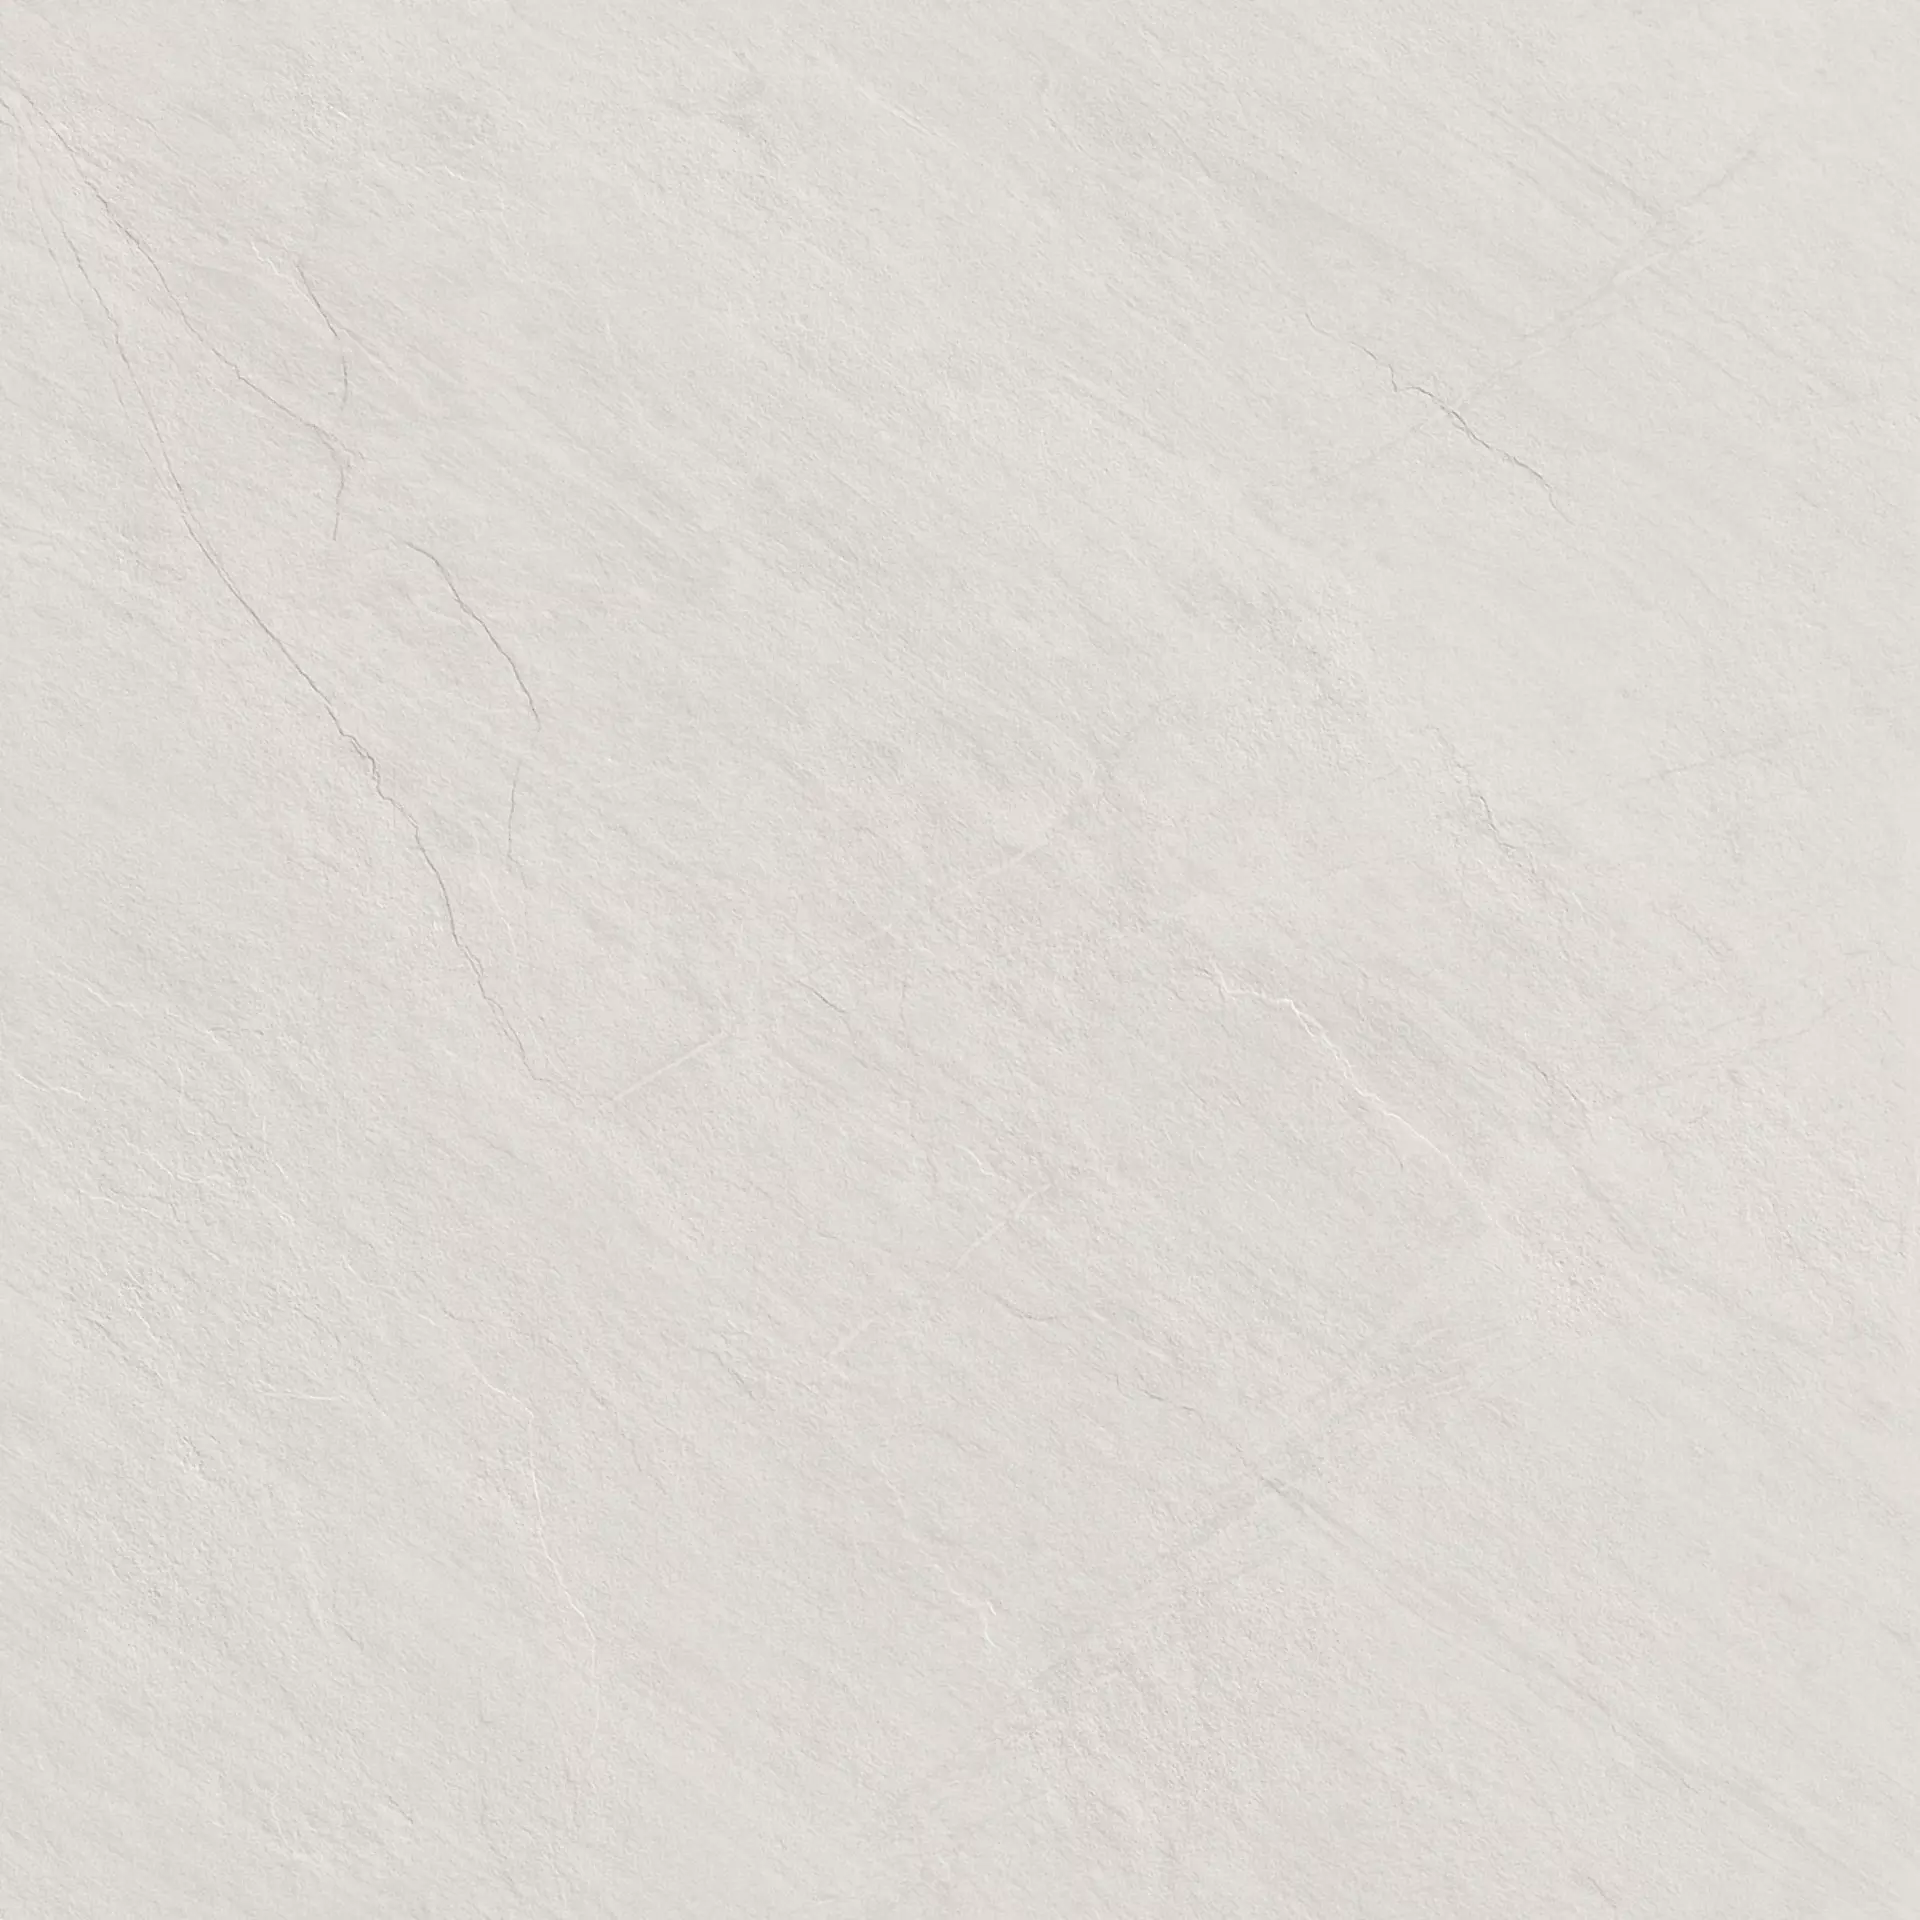 Marazzi Mystone Lavagna Bianco Naturale – Matt M4VX 60x60cm rectified 10mm